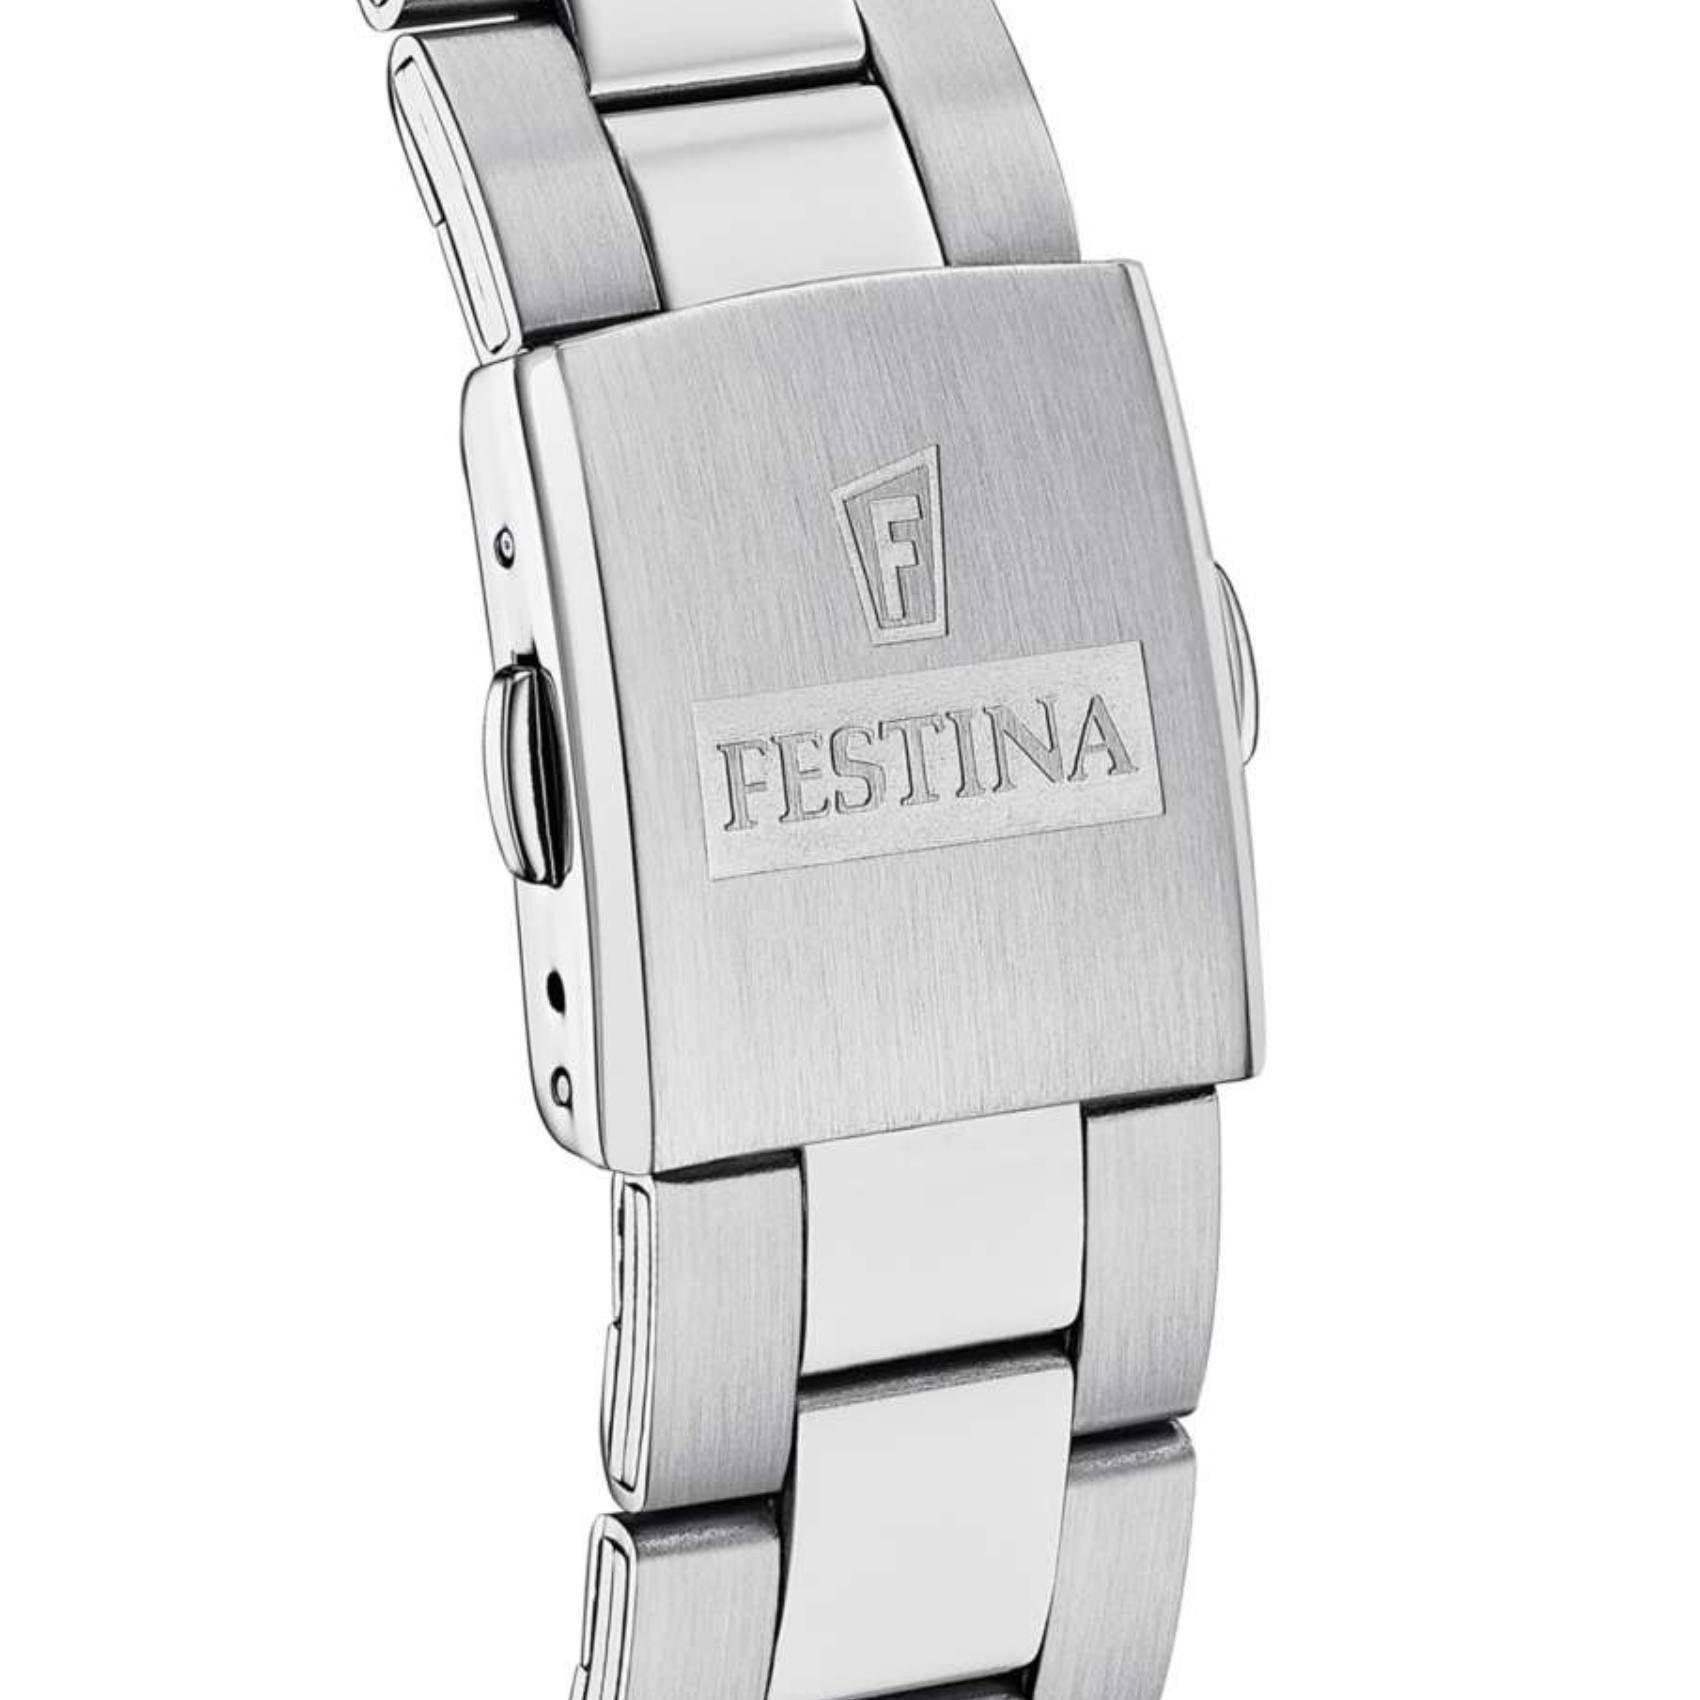 Ρολόι Festina F16820/4 χρονογράφος με ασημί ατσάλινο μπρασελέ, μαύρο καντραν, μηχανισμό μπαταρίας, στρογγυλό στεφάνι με διάμετρο 44mm αδιάβροχο στις 5ΑΤΜ-50Μ.